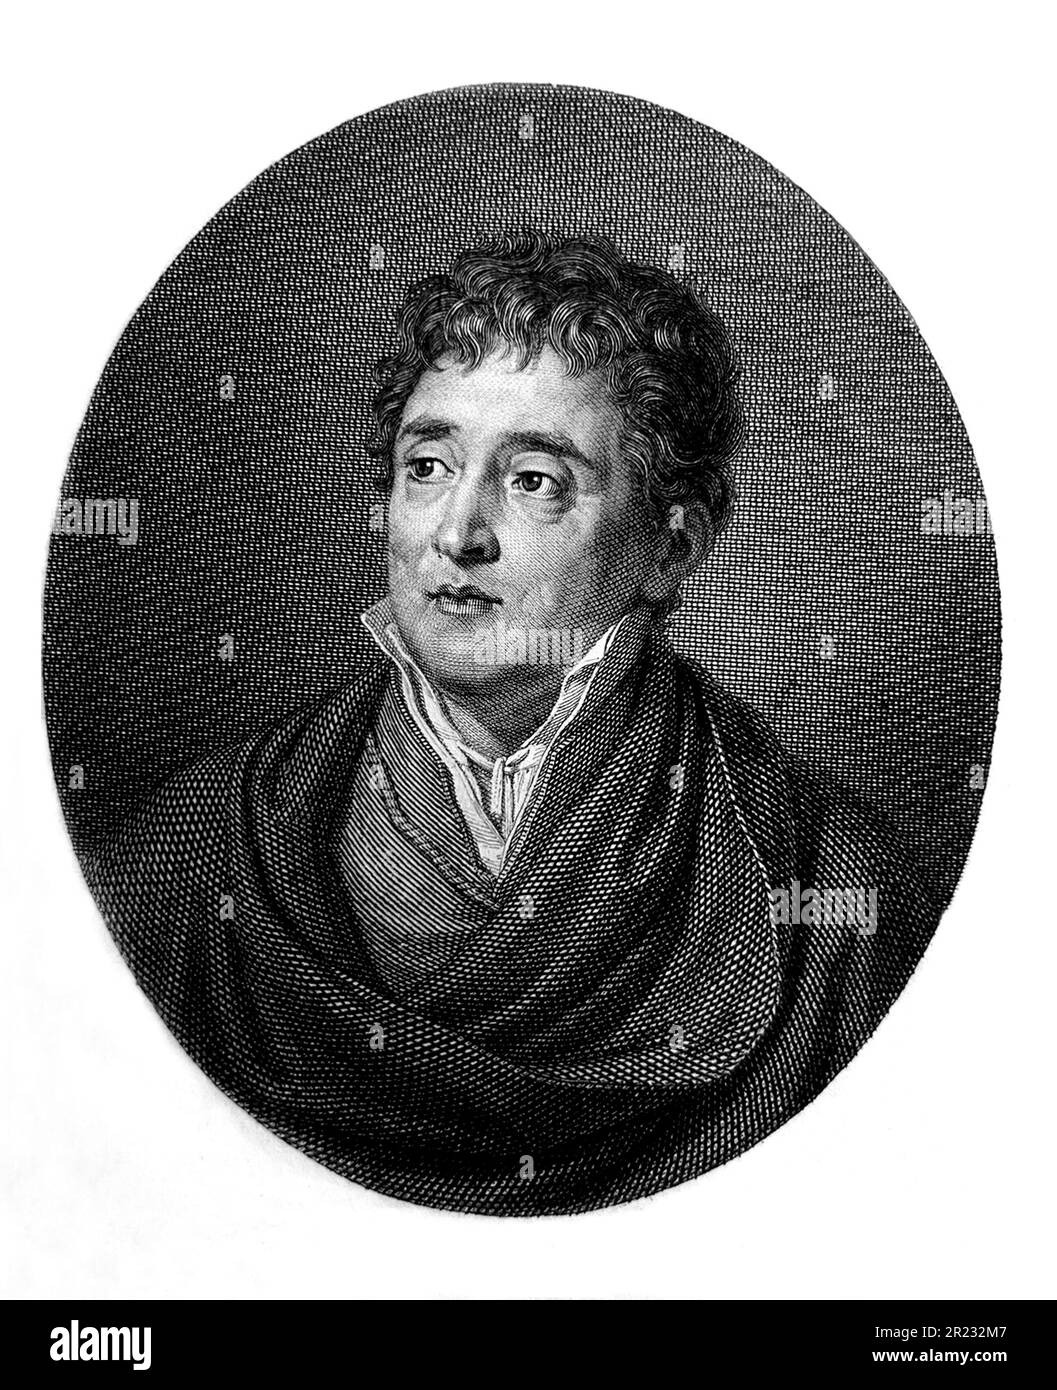 1840 CA , Naples - ITALIE : le poète italien Marchese TOMMASO GARGALLO di CASTEL LENTINI ( 1760 - 1843 ). Graveur inconnu . - HISTOIRE - FOTO STORICHE - POETA - POÉSIE - POÉSIE - LETTERATURA - LITTÉRATURE - PORTRAIT - RITRATTO - colletto - collier - ROMANTICISMO - ROMANTISME - Nobili italiani - Nobiltà italiana - noblesse italienne - GRAVURE - INCISIONE - ILLUSTRATION - ILLUSTRAZIONE - ARCHIVIO-- Banque D'Images